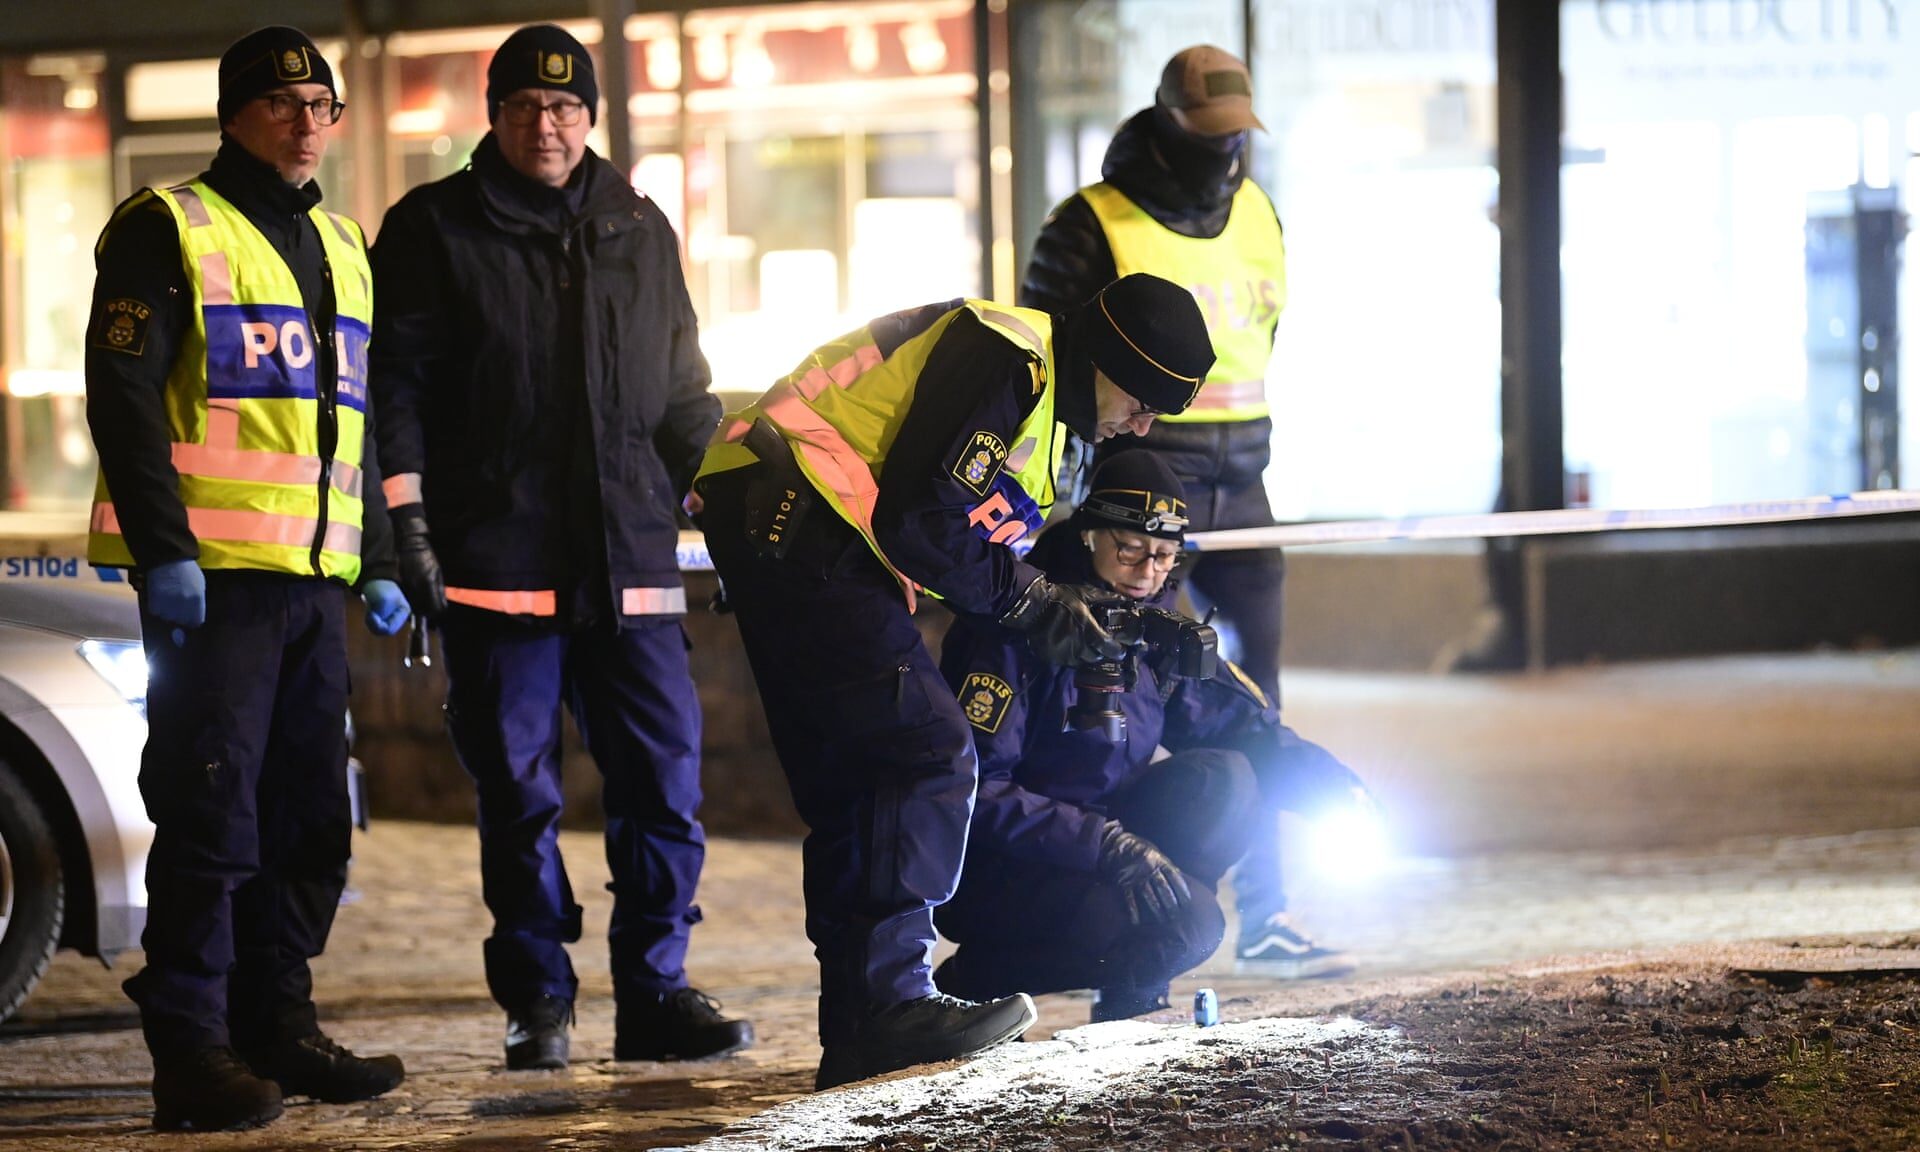 Police in Vetlanda, Sweden